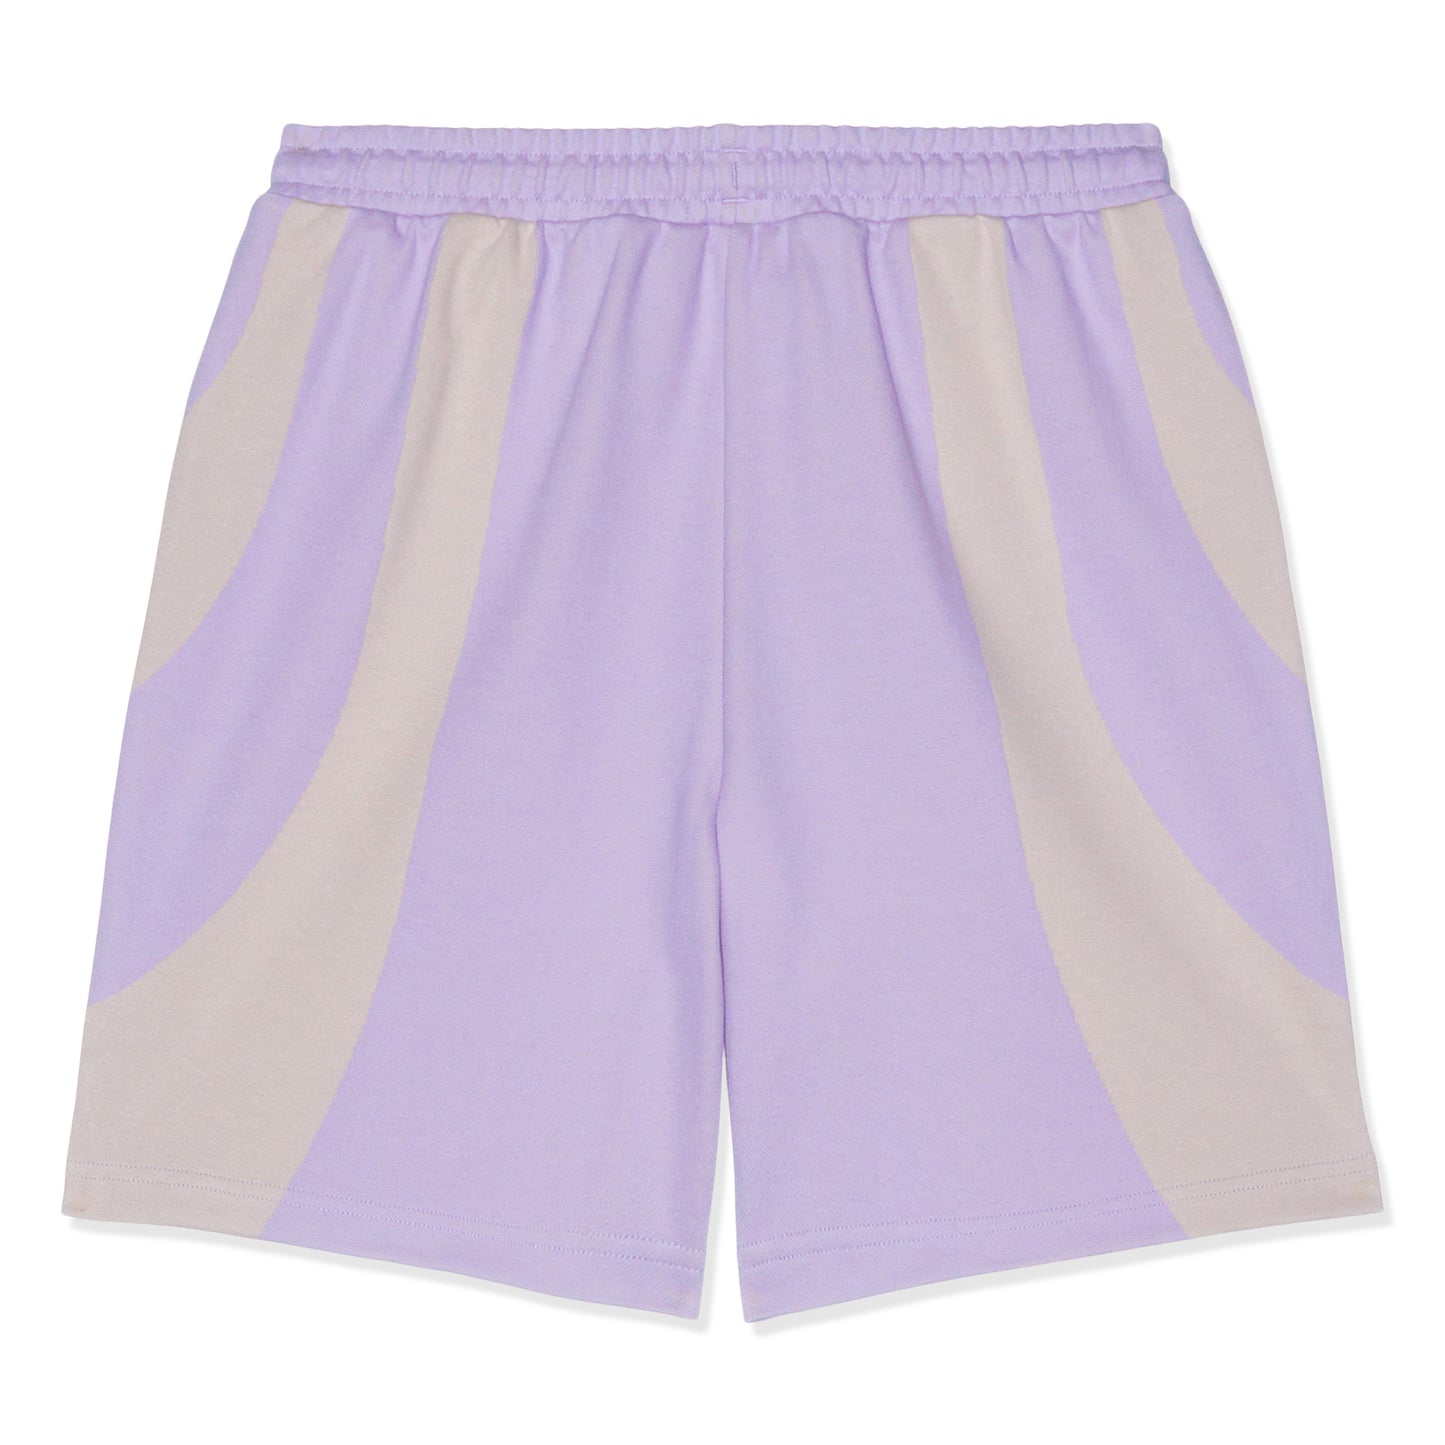 Puma x KidSuper Shorts (Purple)